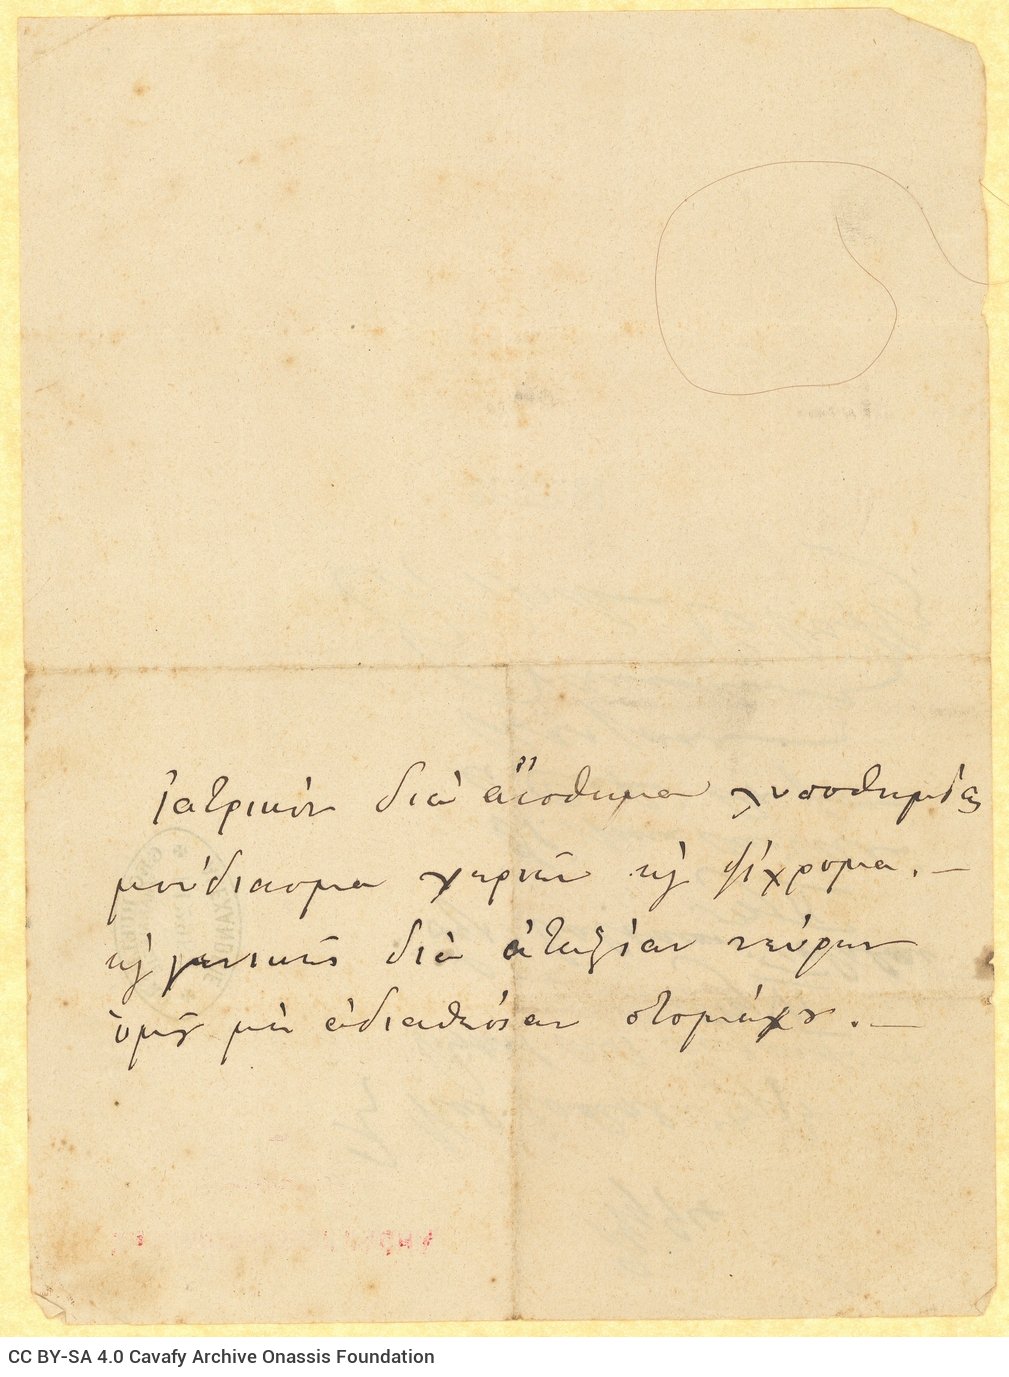 Χειρόγραφη ιατρική συνταγή του γιατρού Αουγκούστε Βάρενχορστ (Auguste V